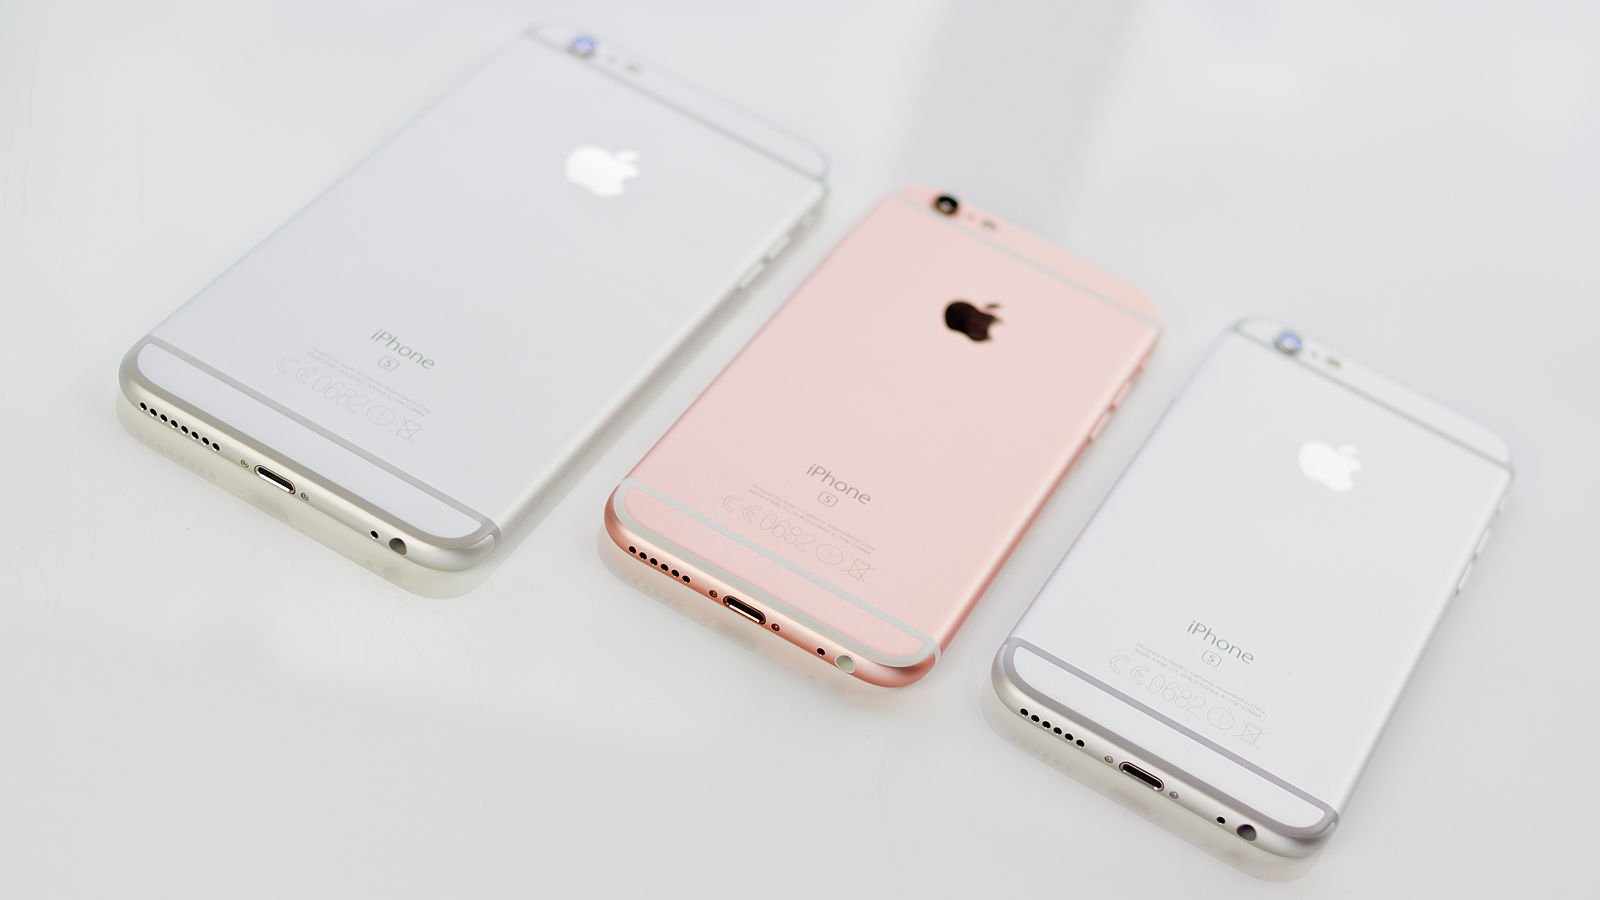 جوالات ايفون الجديدة iPhone 6s و iPhone 6s Plus في الكويت